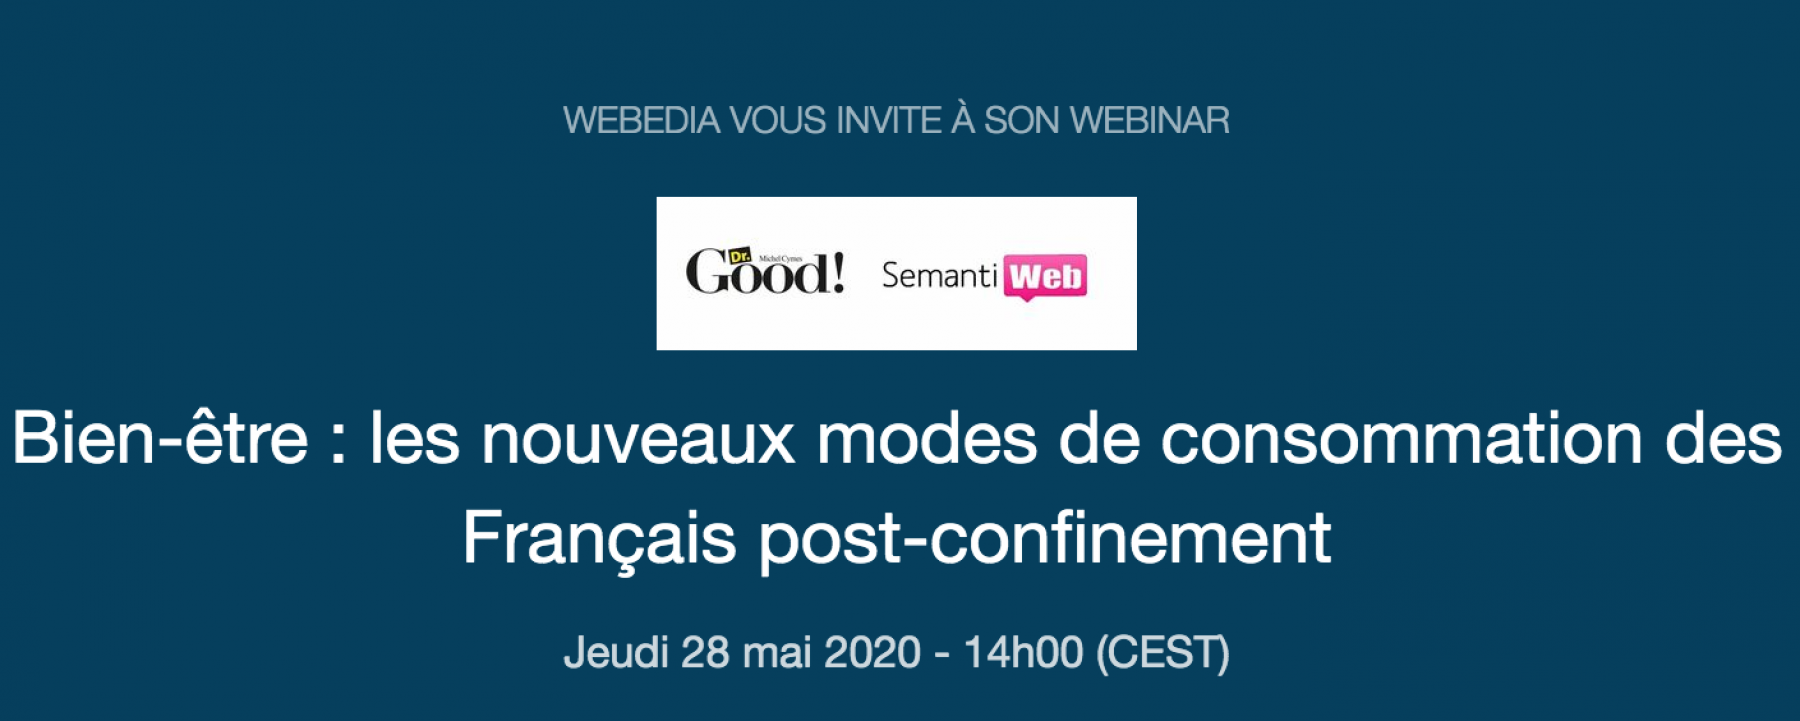 Webinar Bien-être : les nouveaux modes de consommation des Français post-confinement, le 28 mai 2020, organisé par Webedia 